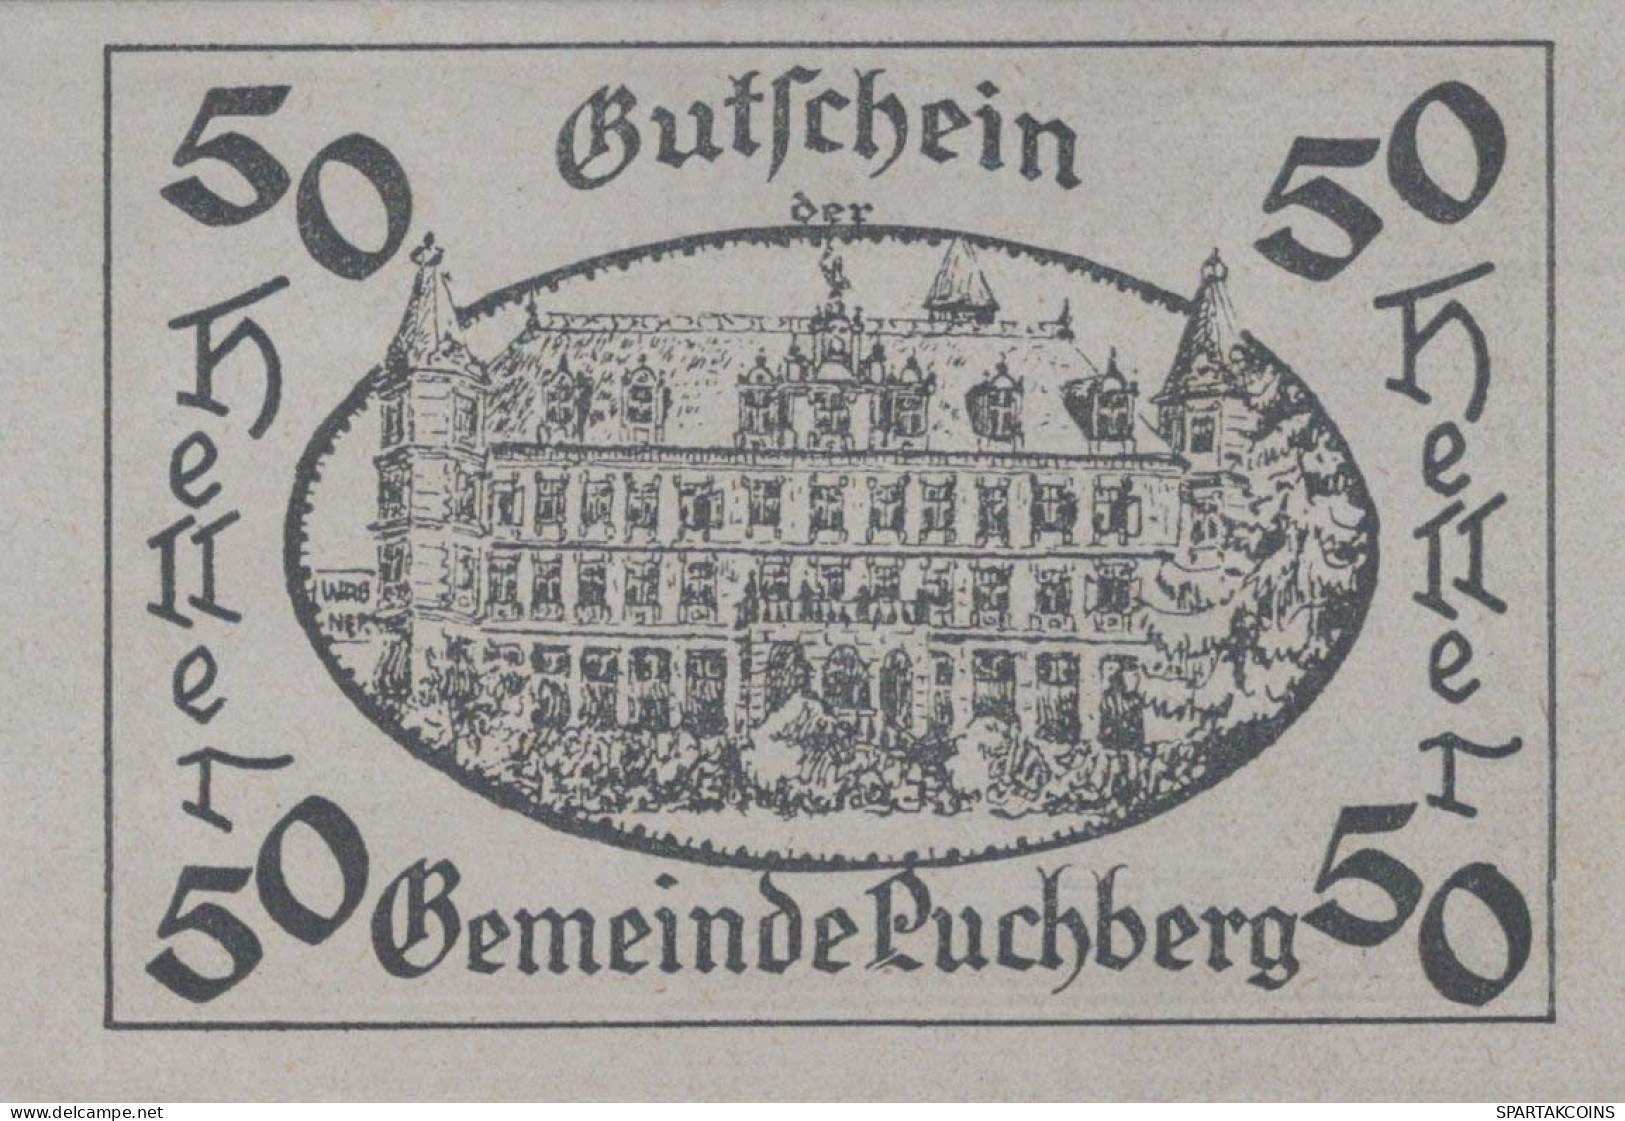 50 HELLER 1920 Stadt PUCHBERG BEI WELS Oberösterreich Österreich Notgeld Papiergeld Banknote #PG981 - [11] Emissions Locales